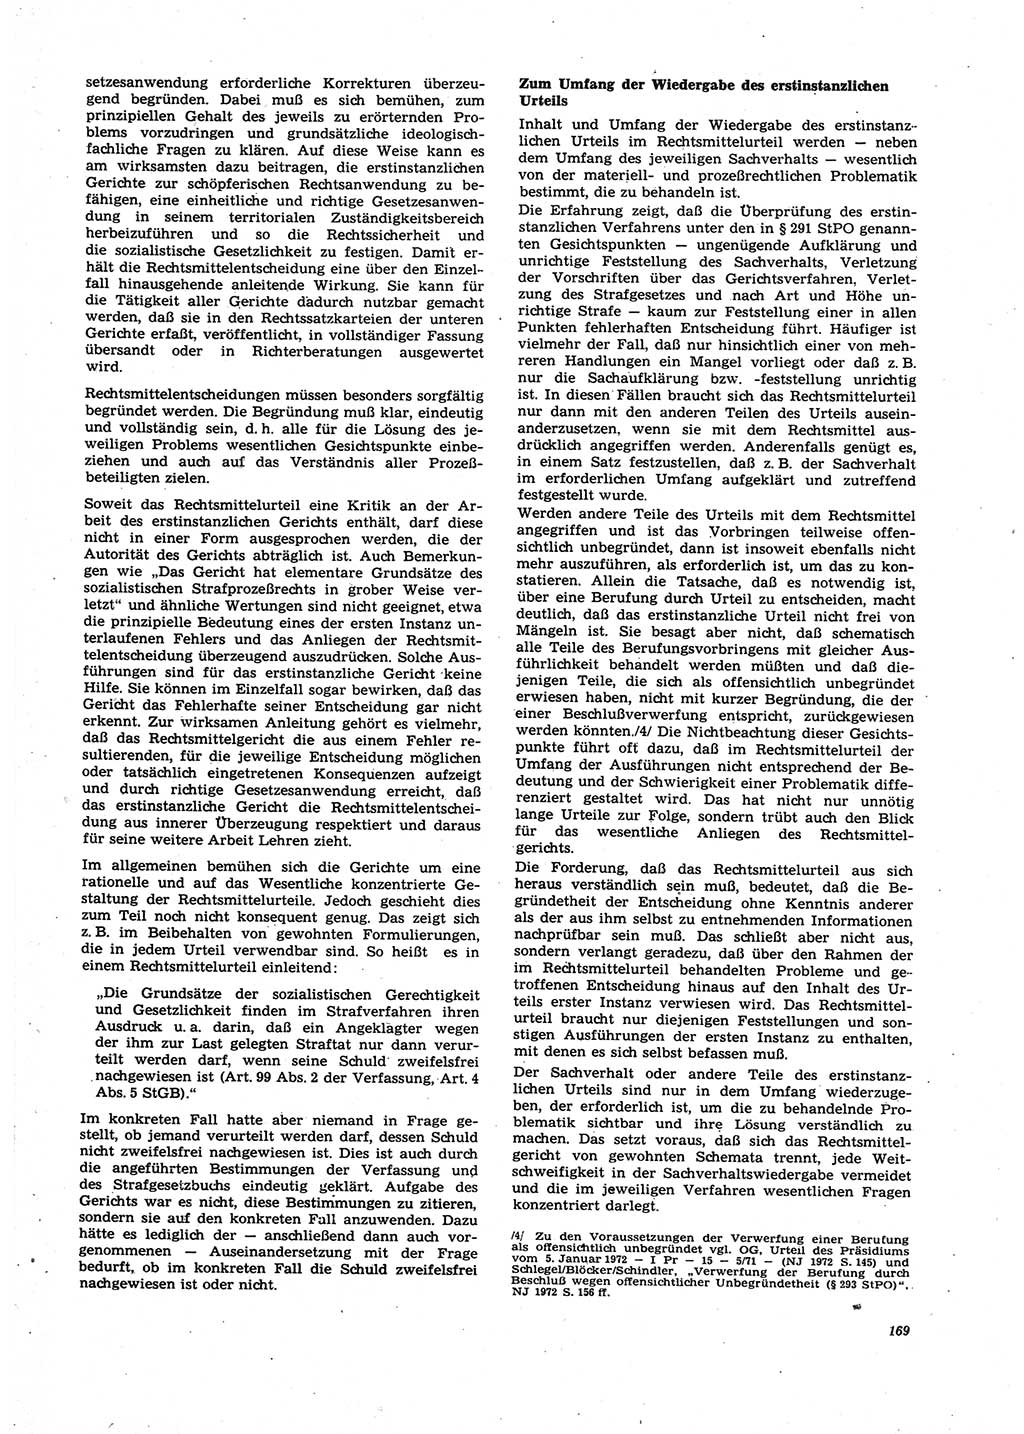 Neue Justiz (NJ), Zeitschrift für Recht und Rechtswissenschaft [Deutsche Demokratische Republik (DDR)], 27. Jahrgang 1973, Seite 169 (NJ DDR 1973, S. 169)